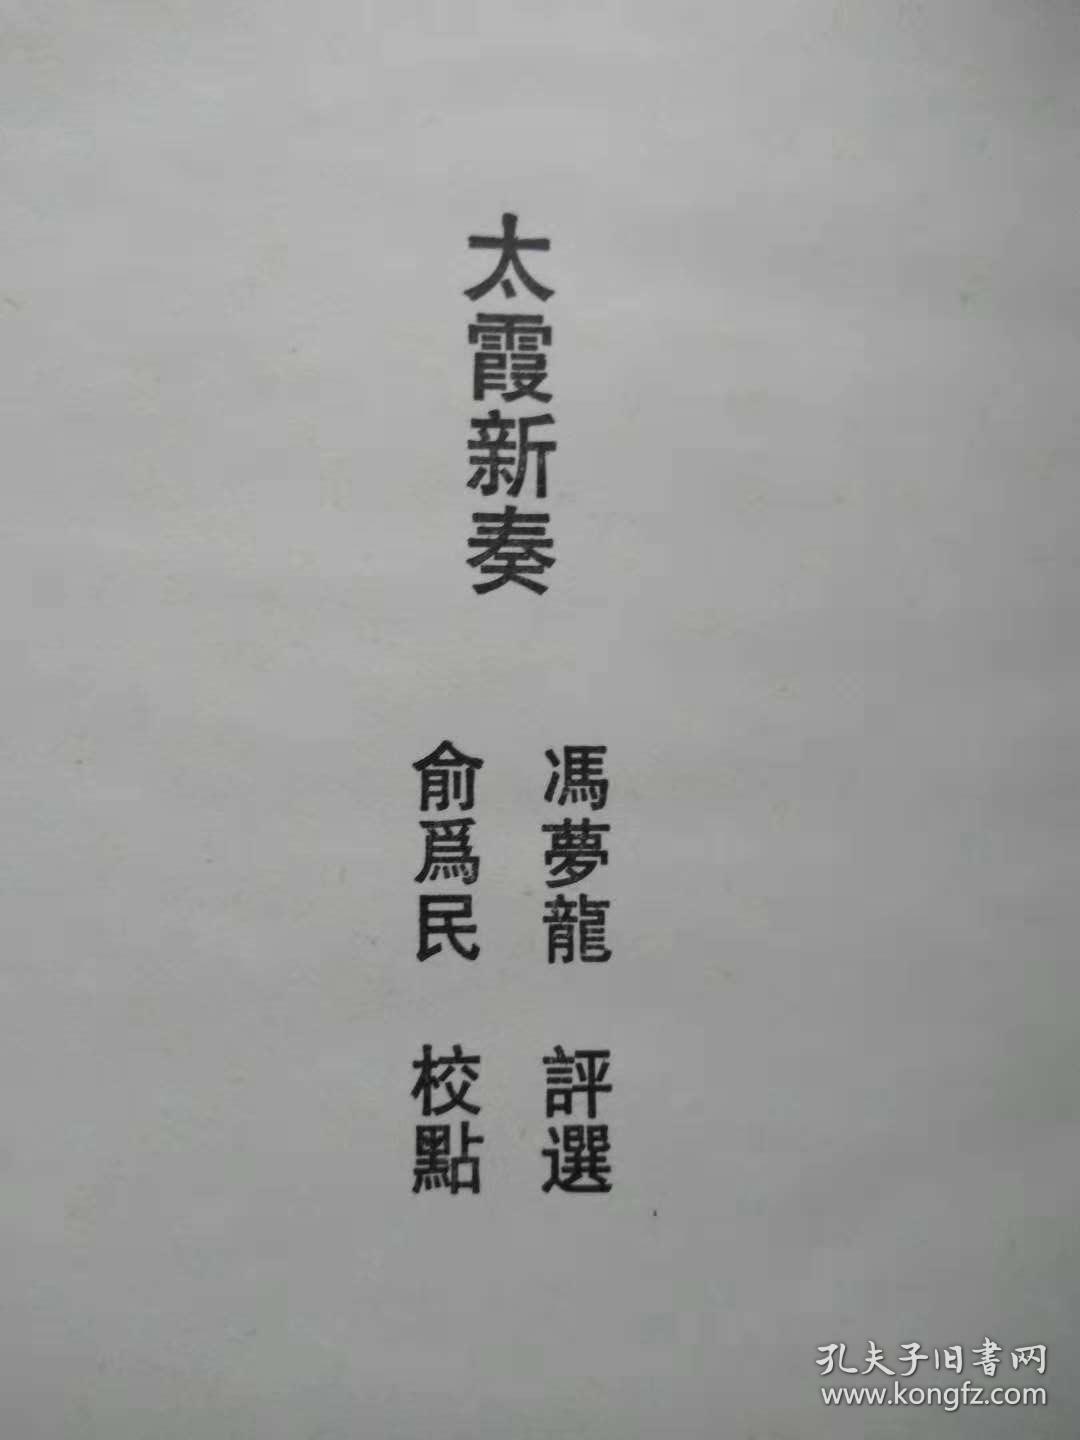 《冯梦龙全集》（14）--太霞新奏（全一册）--【明】冯梦龙评选。江苏古籍出版社。1993年。1版1印。竖排繁体字。硬精装